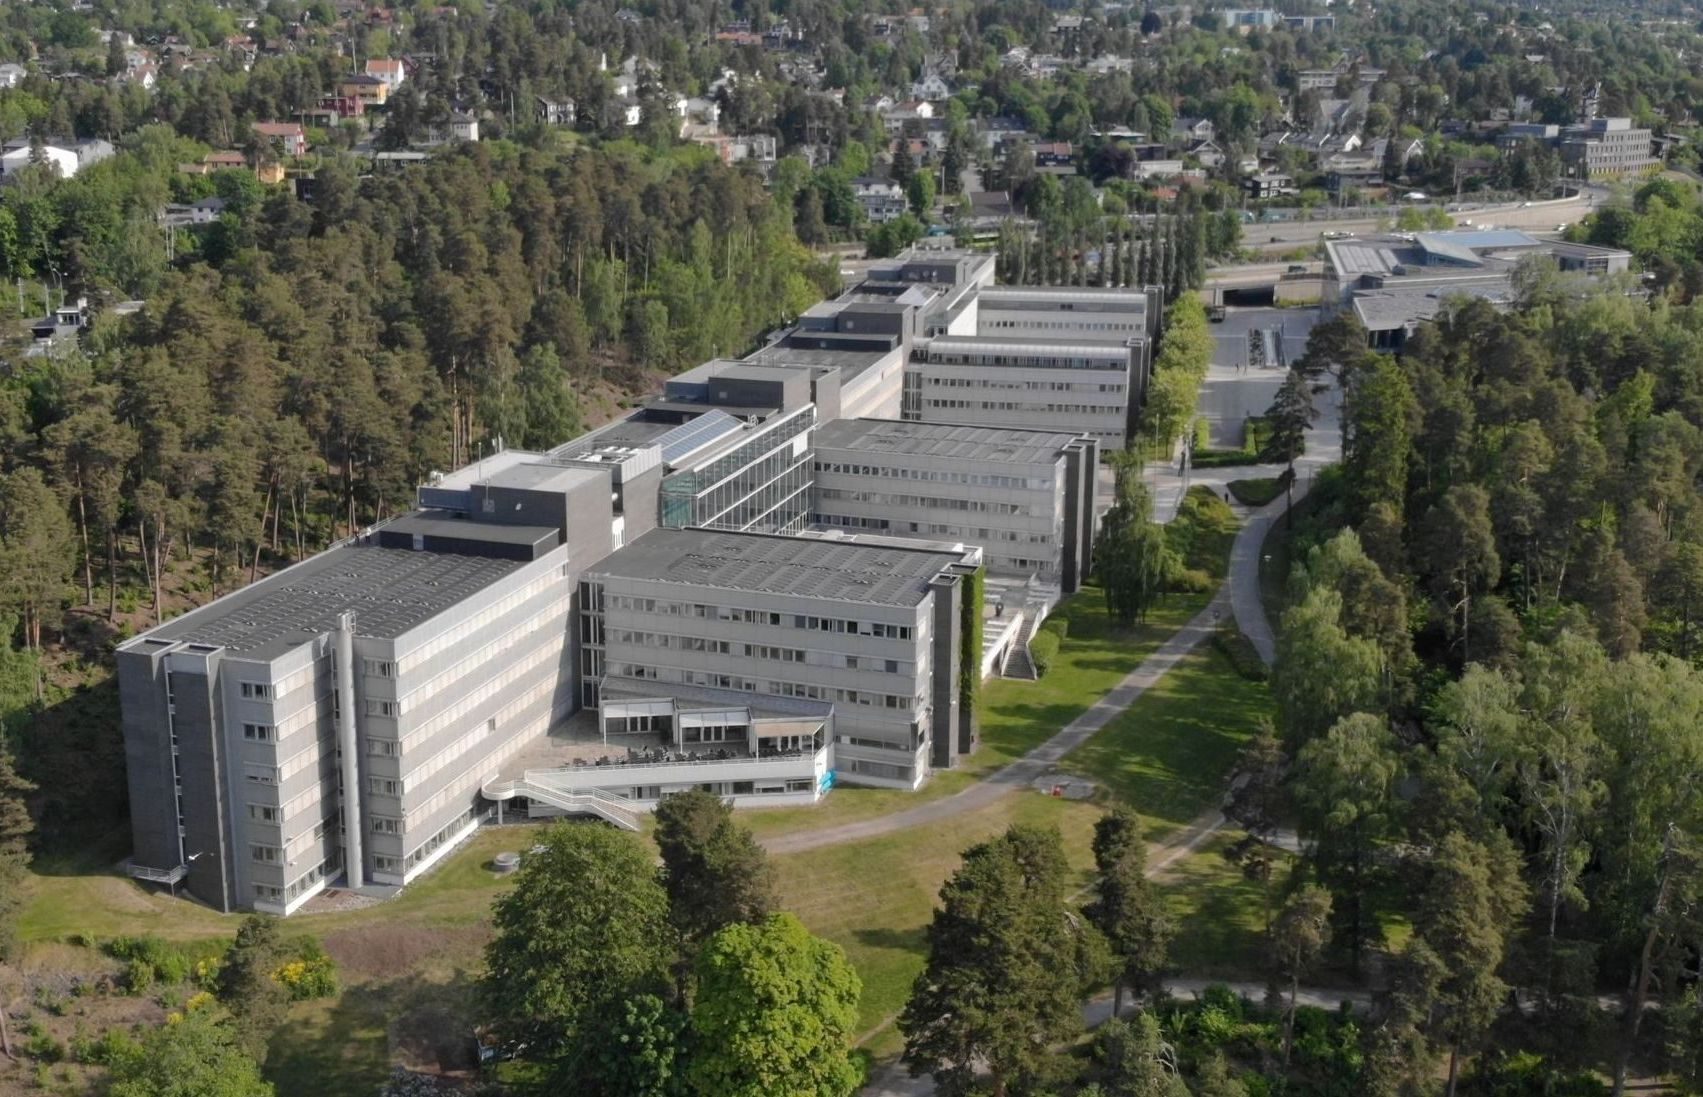 Bilde av Norsk Hydros Pensjonskasses kontorbygg på Vækerø. Solcelleanlegget på taket er et av de største i Oslo.